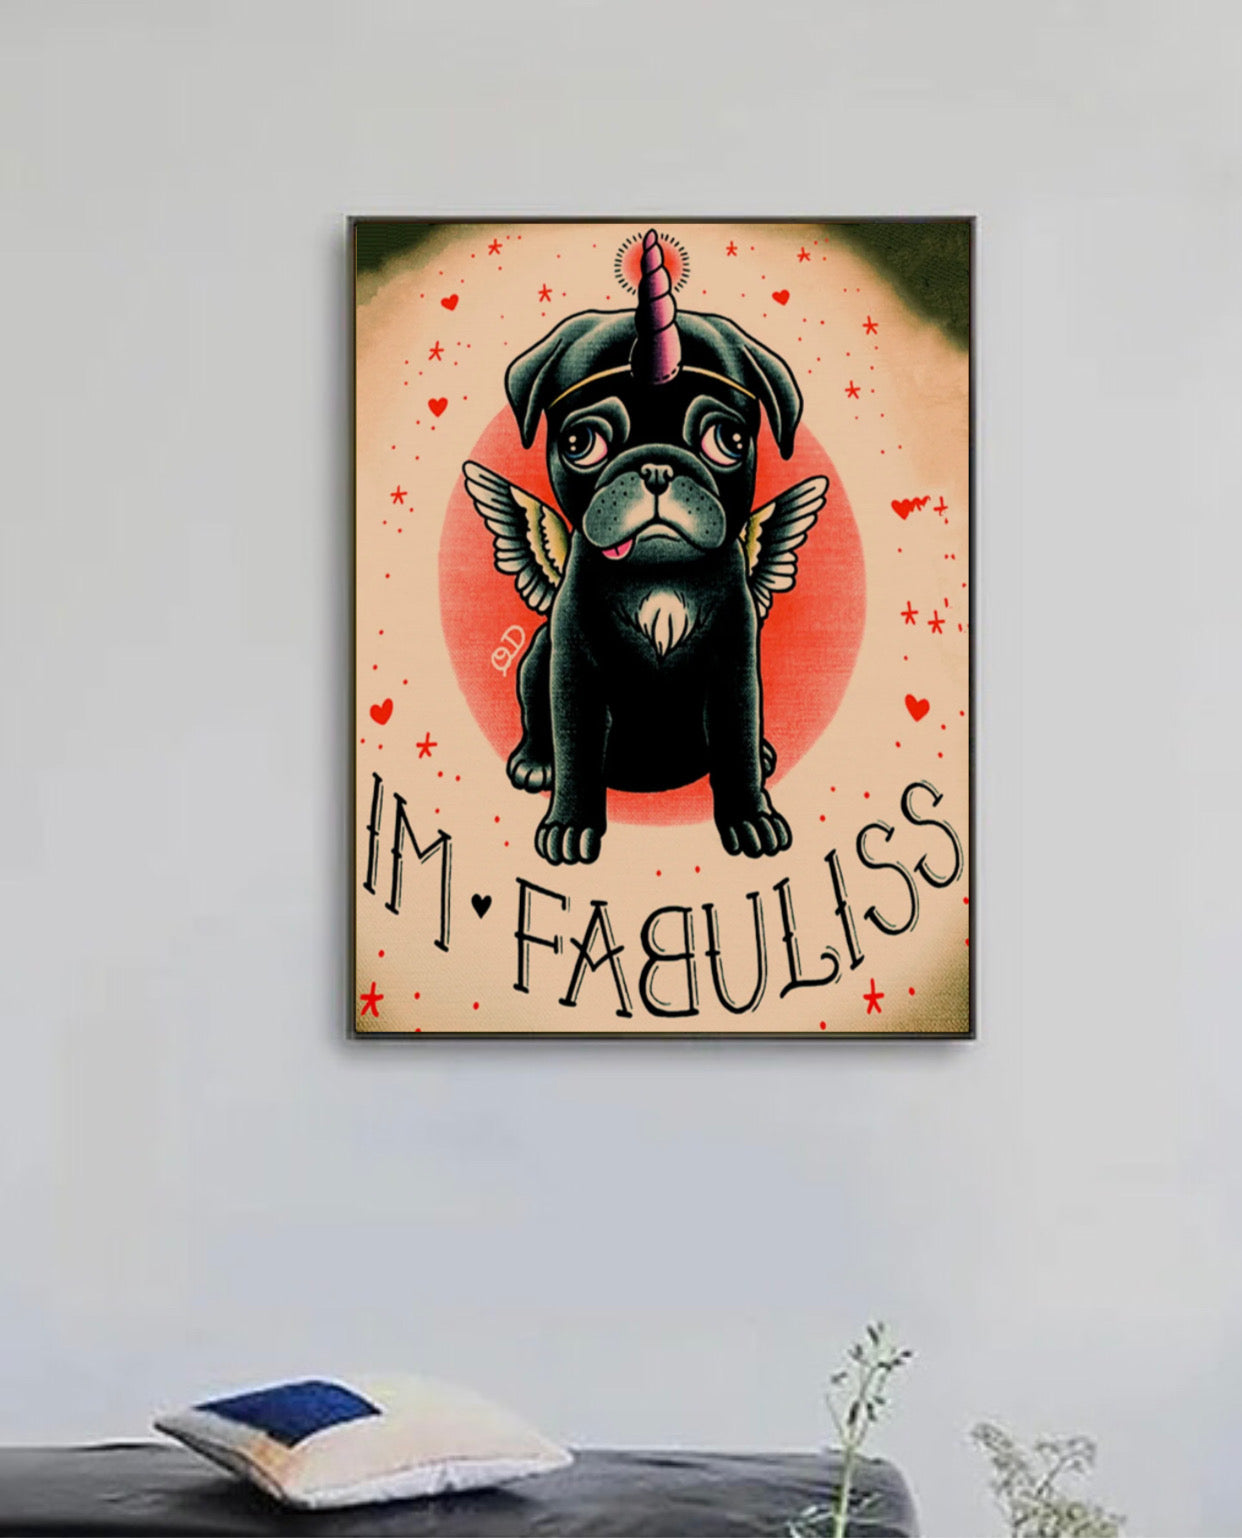 "im-fabuliss" tattoo poster